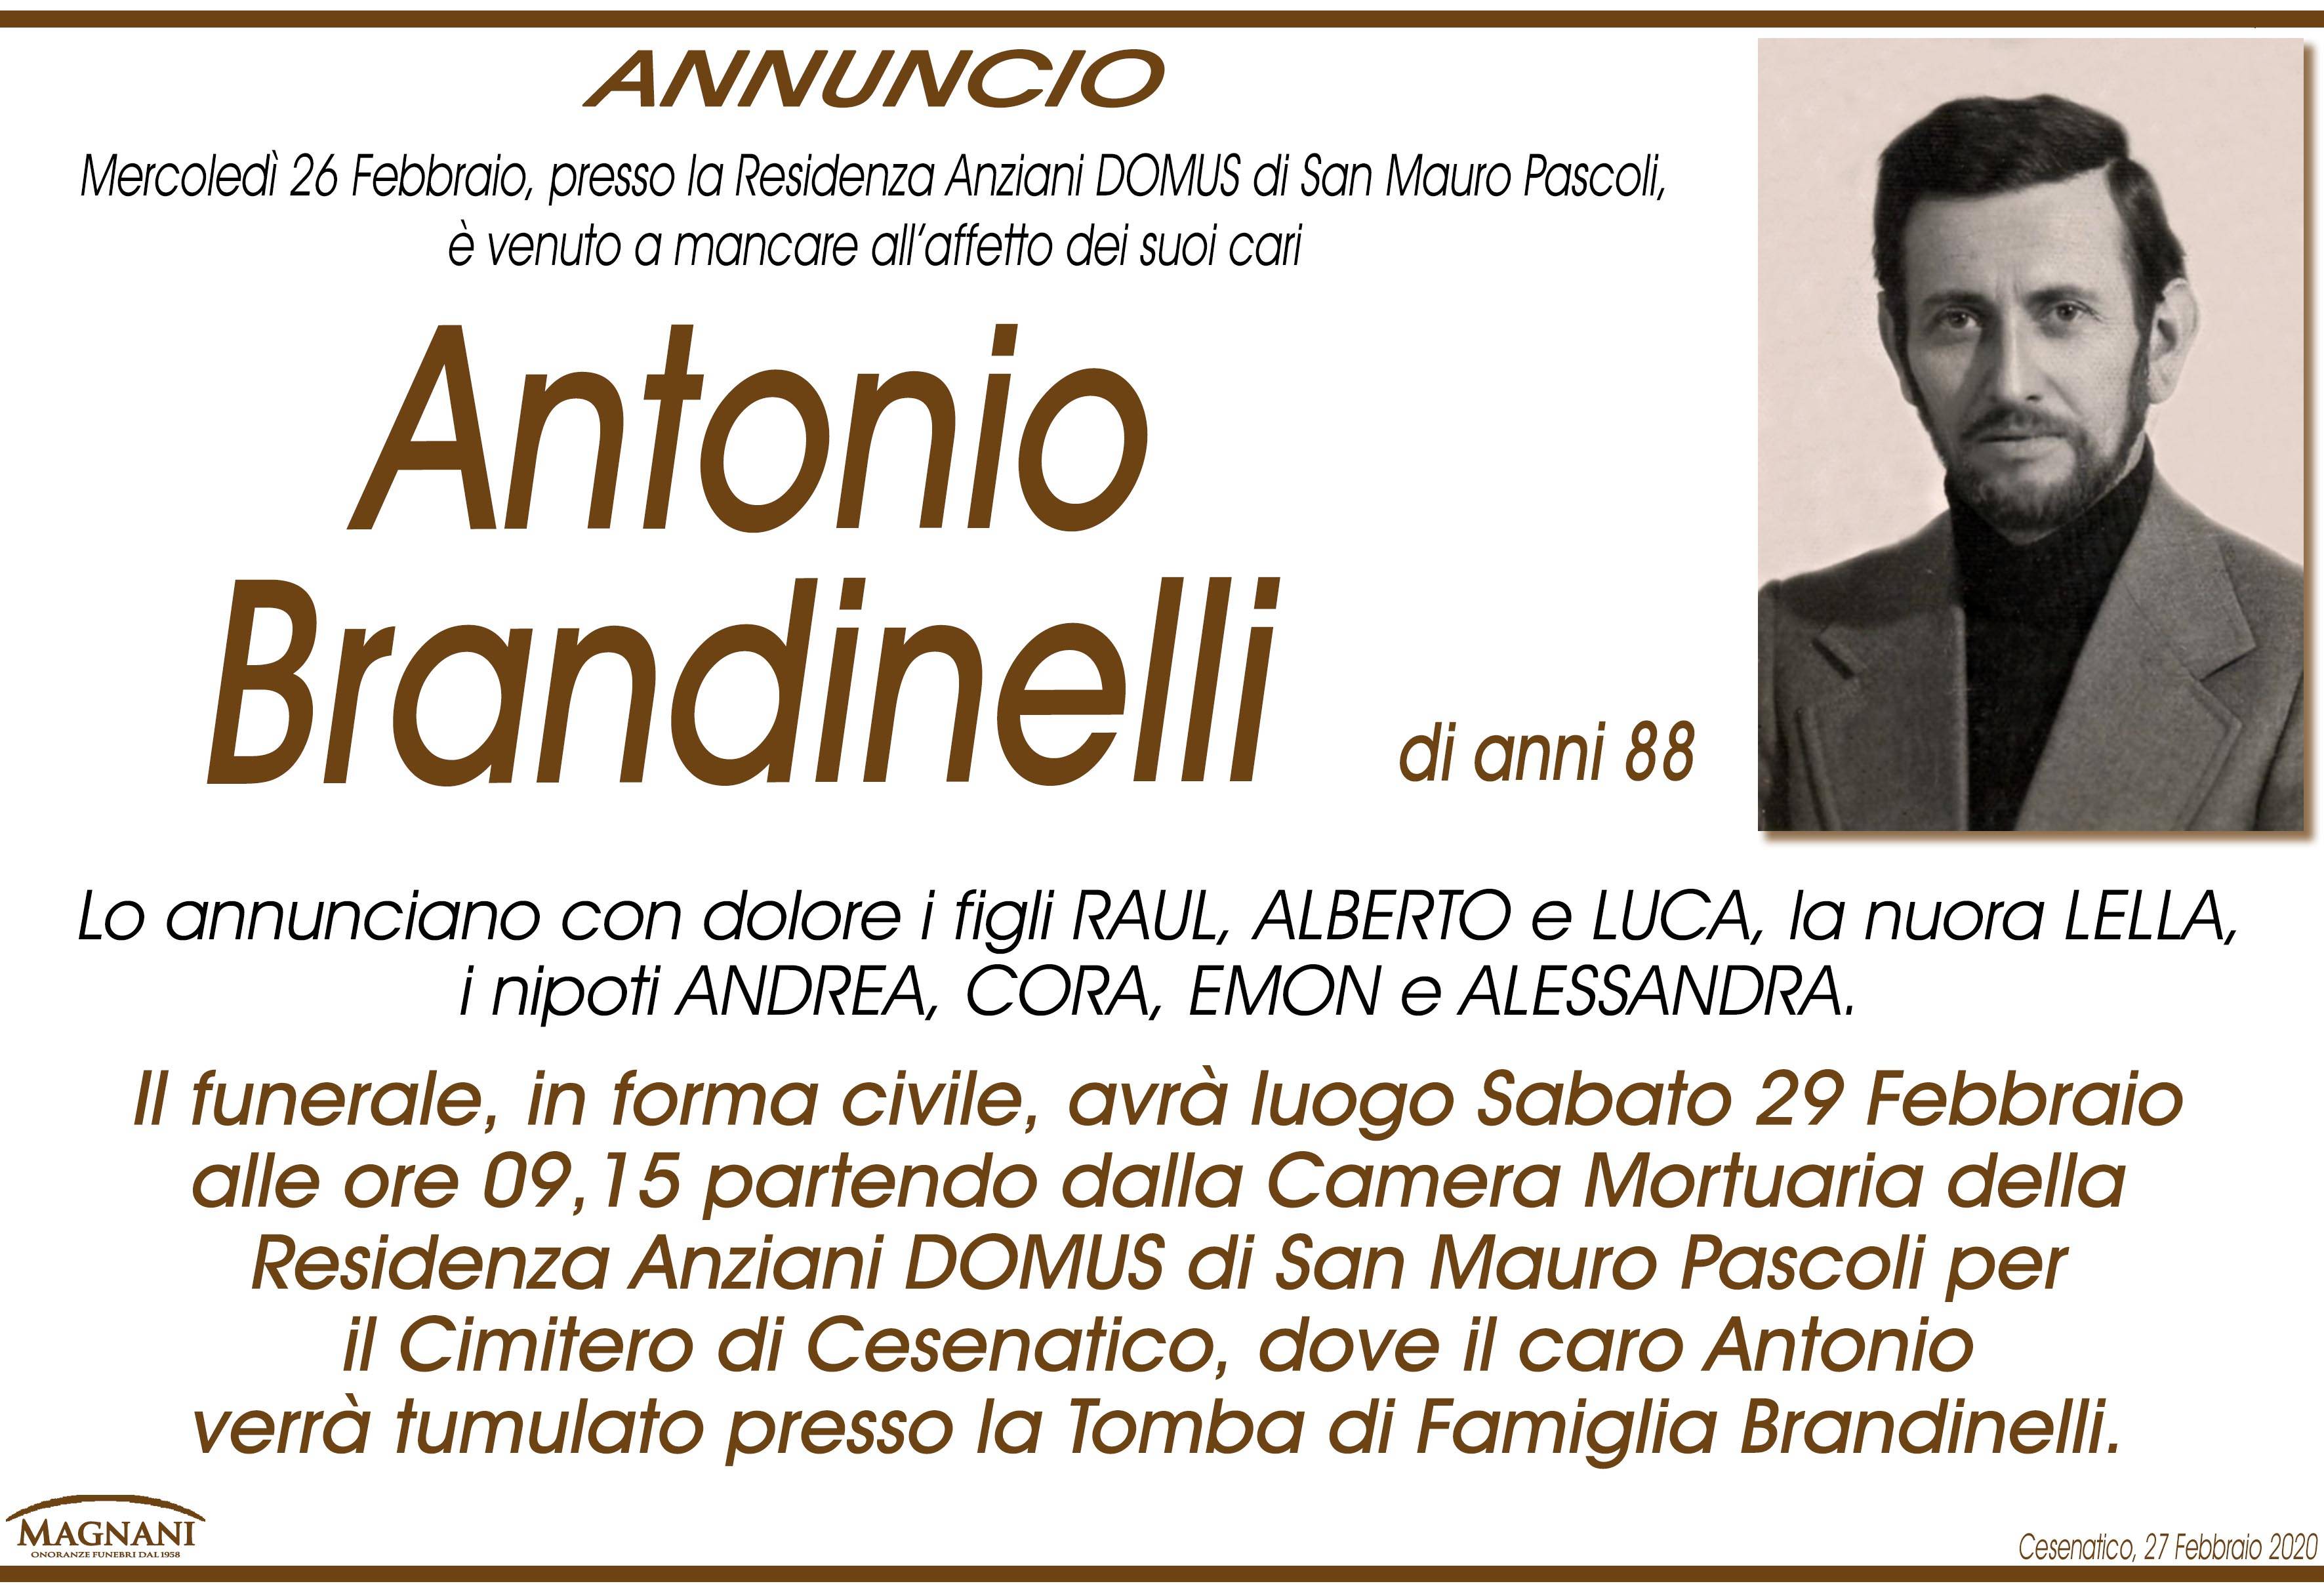 Antonio Brandinelli